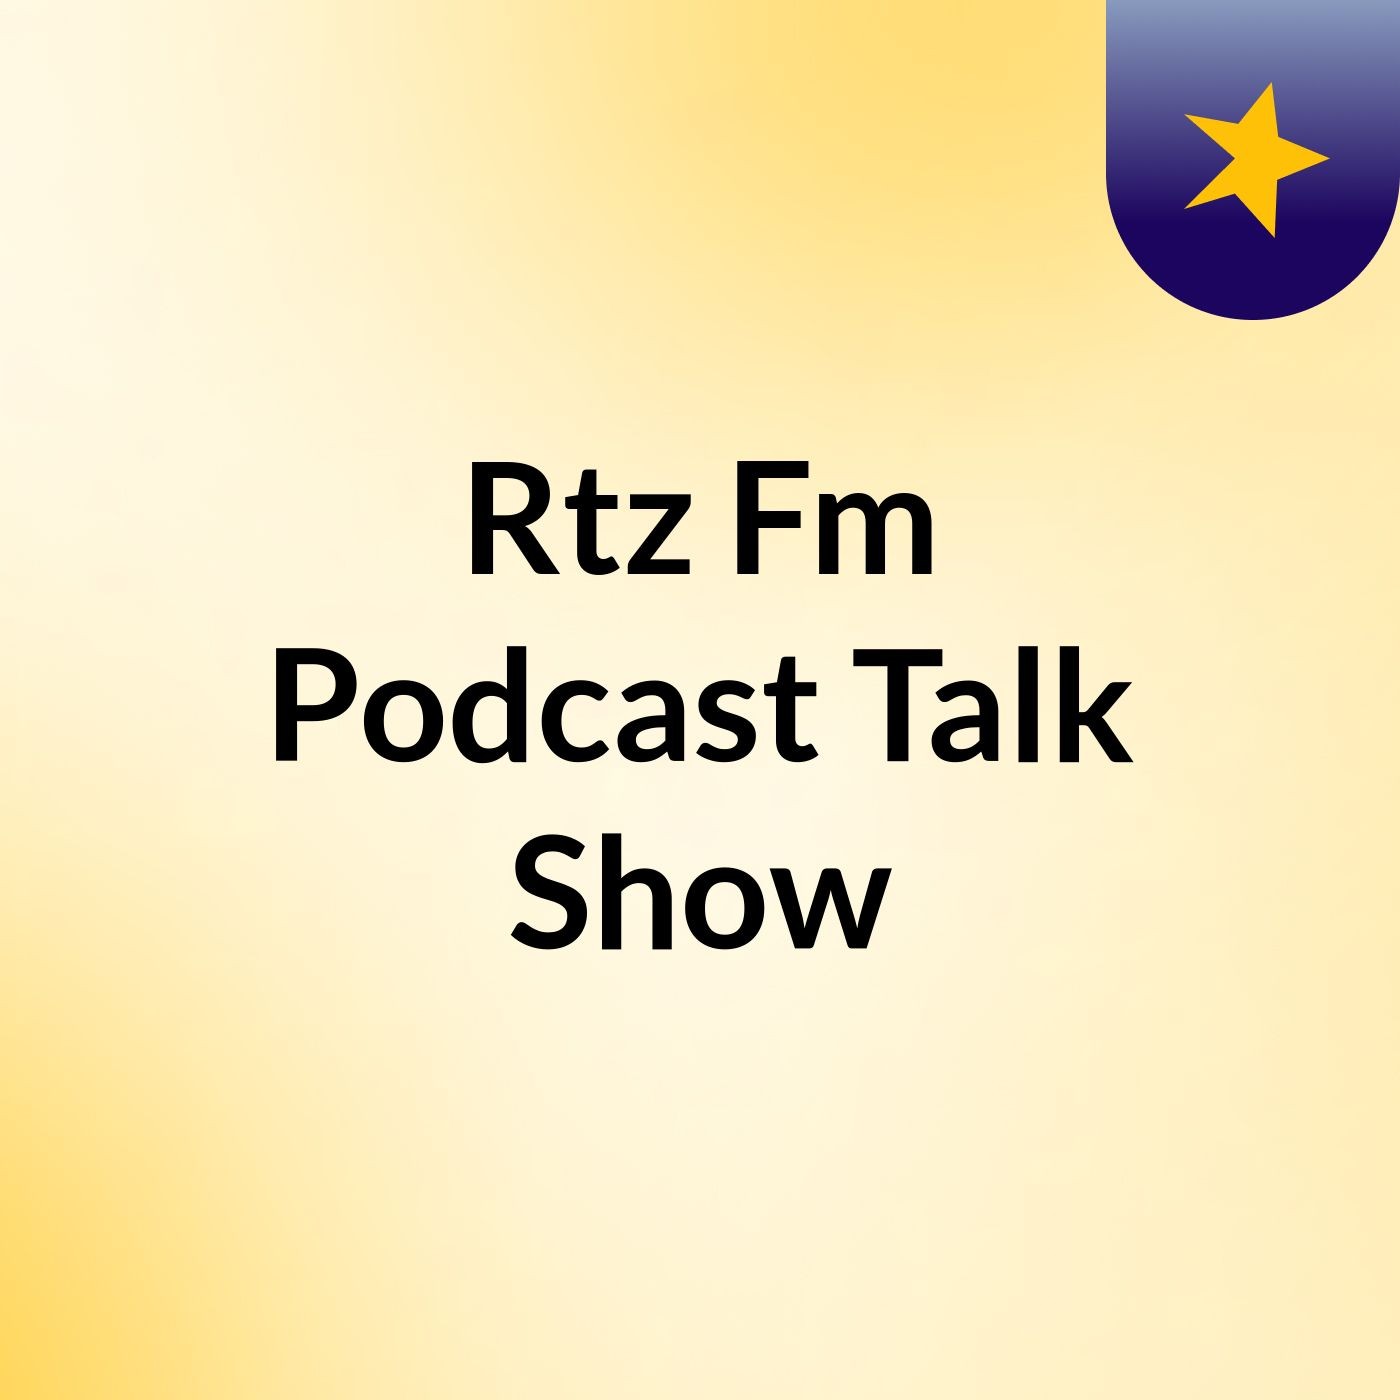 Rtz Fm Podcast Talk Show